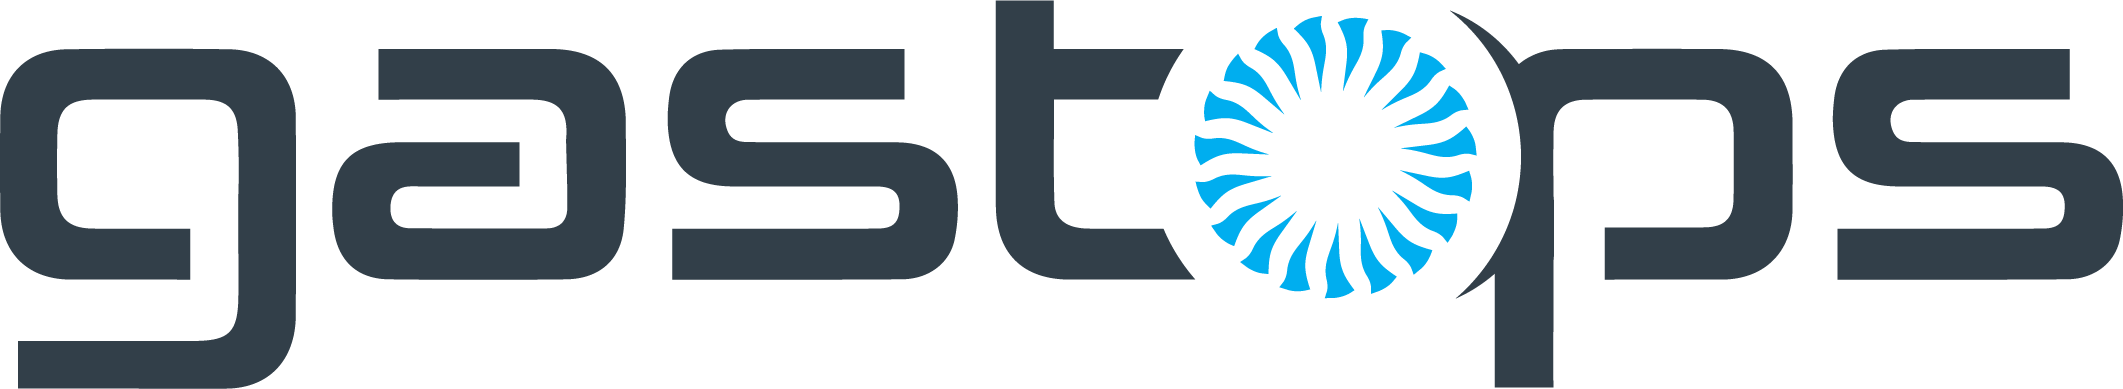 gastops logo